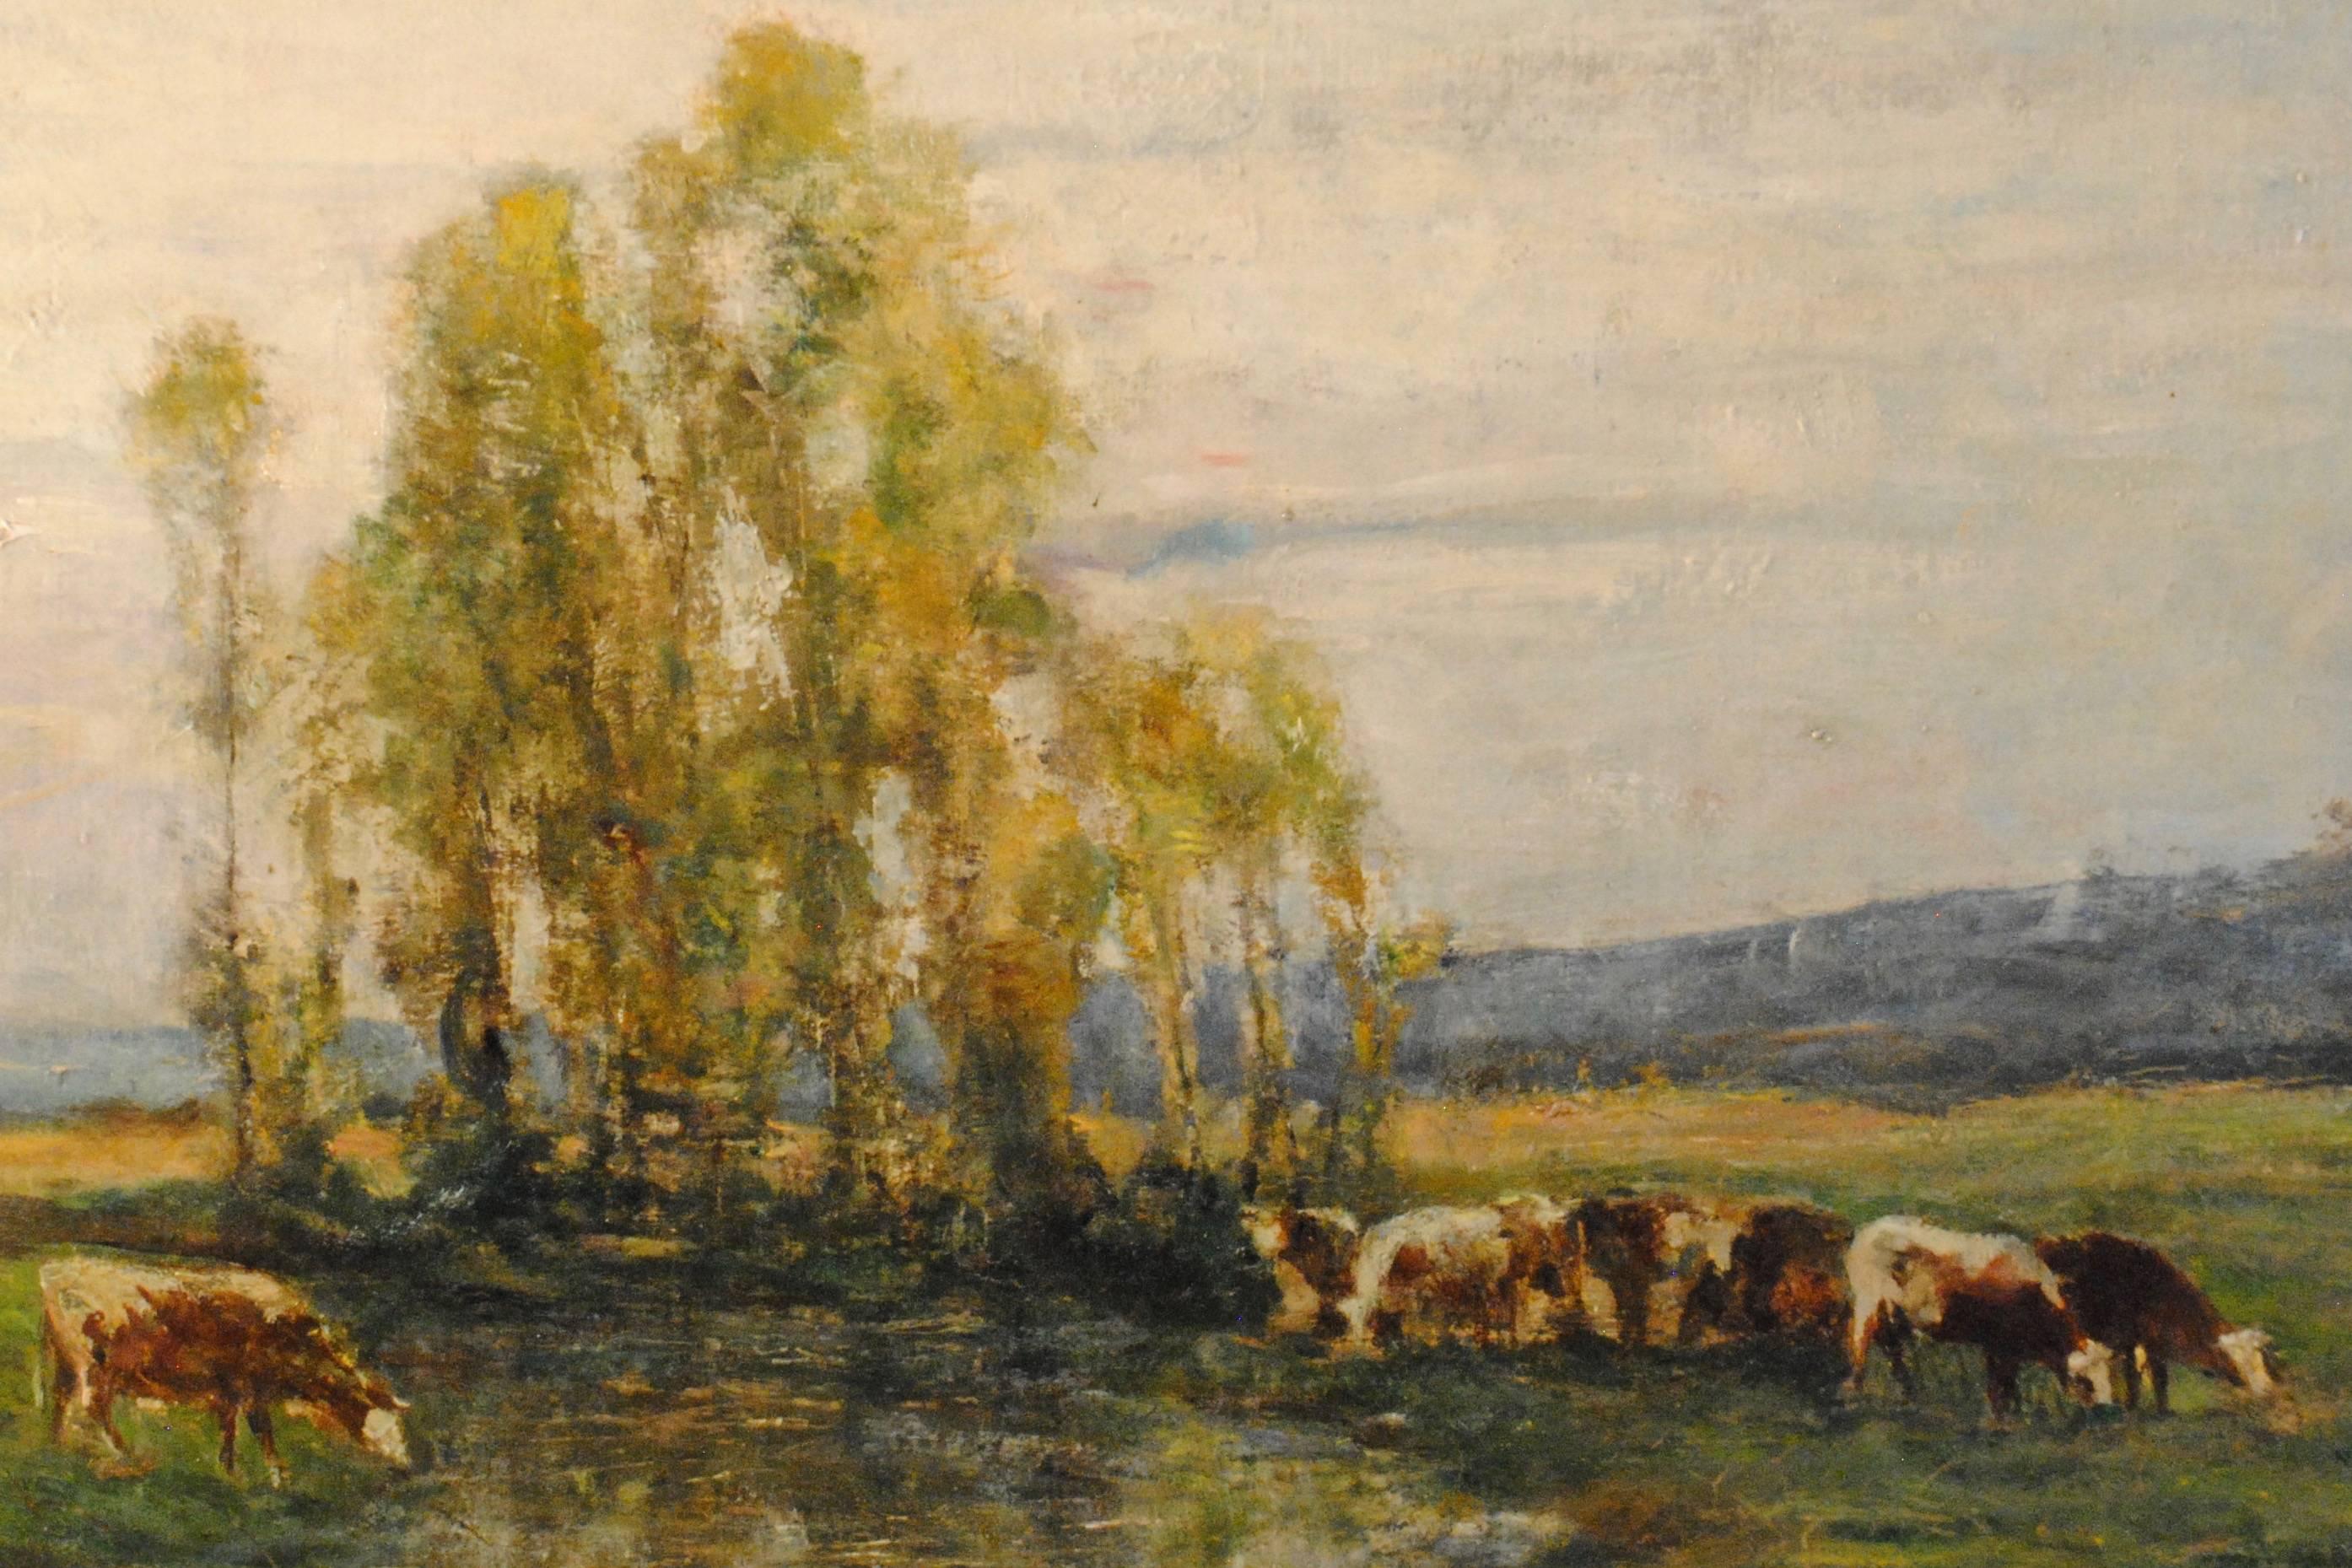 "Huit vaches au pâturage par un ruisseau" ("Eight cows on pasture by a stream")

Signed Barbizon Oil Painting on canvas,  Georges Pierre Diéterle, c. 1888.

"Huit vaches au pâturage par un ruisseau," c. 1888
Georges